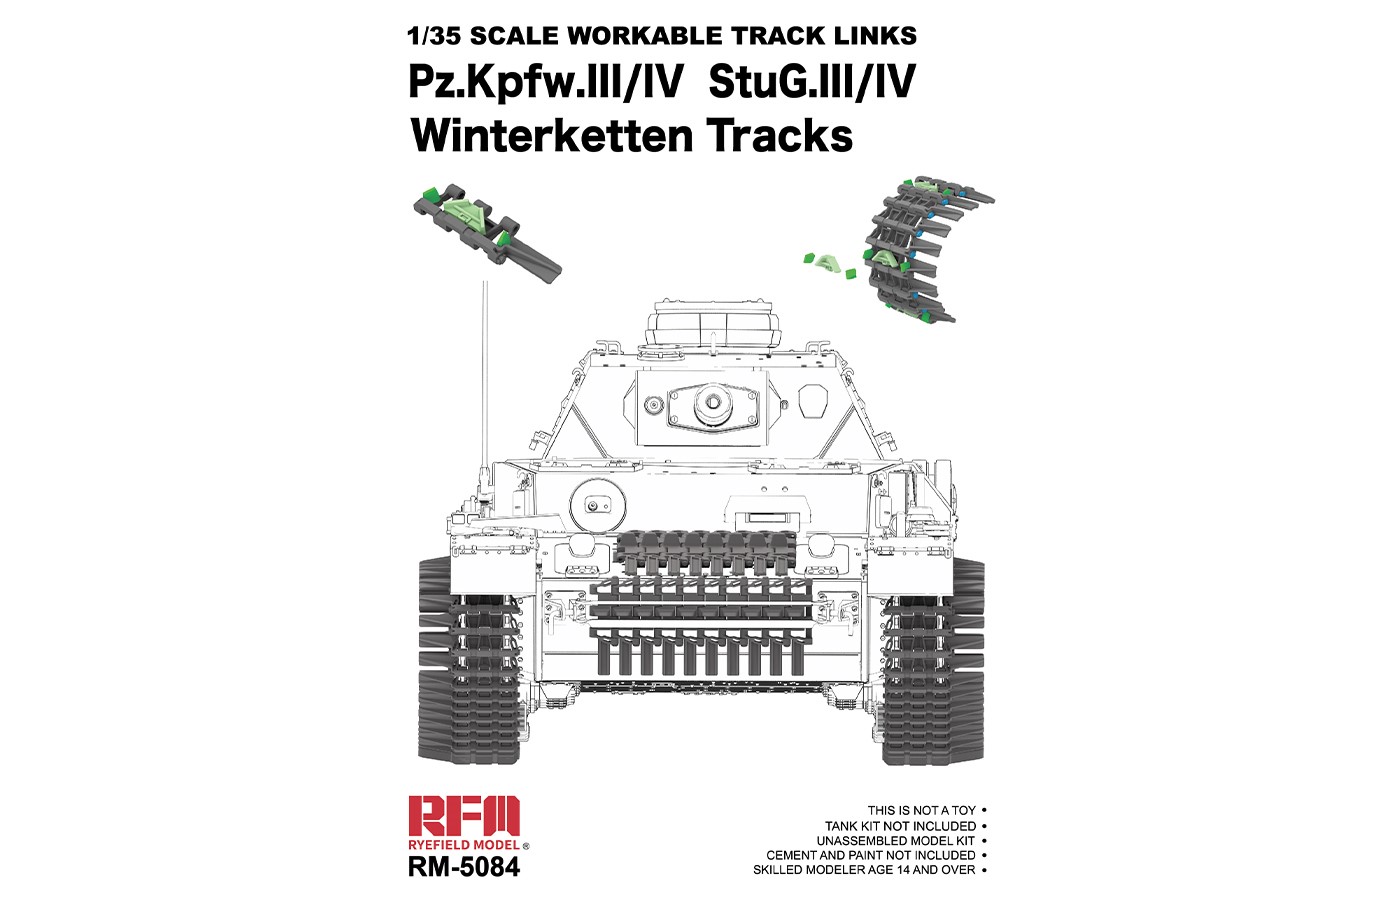 RM-5084 Pz.Kpfw.lll/IV StuG.Ill/IV Winterketten Tracks